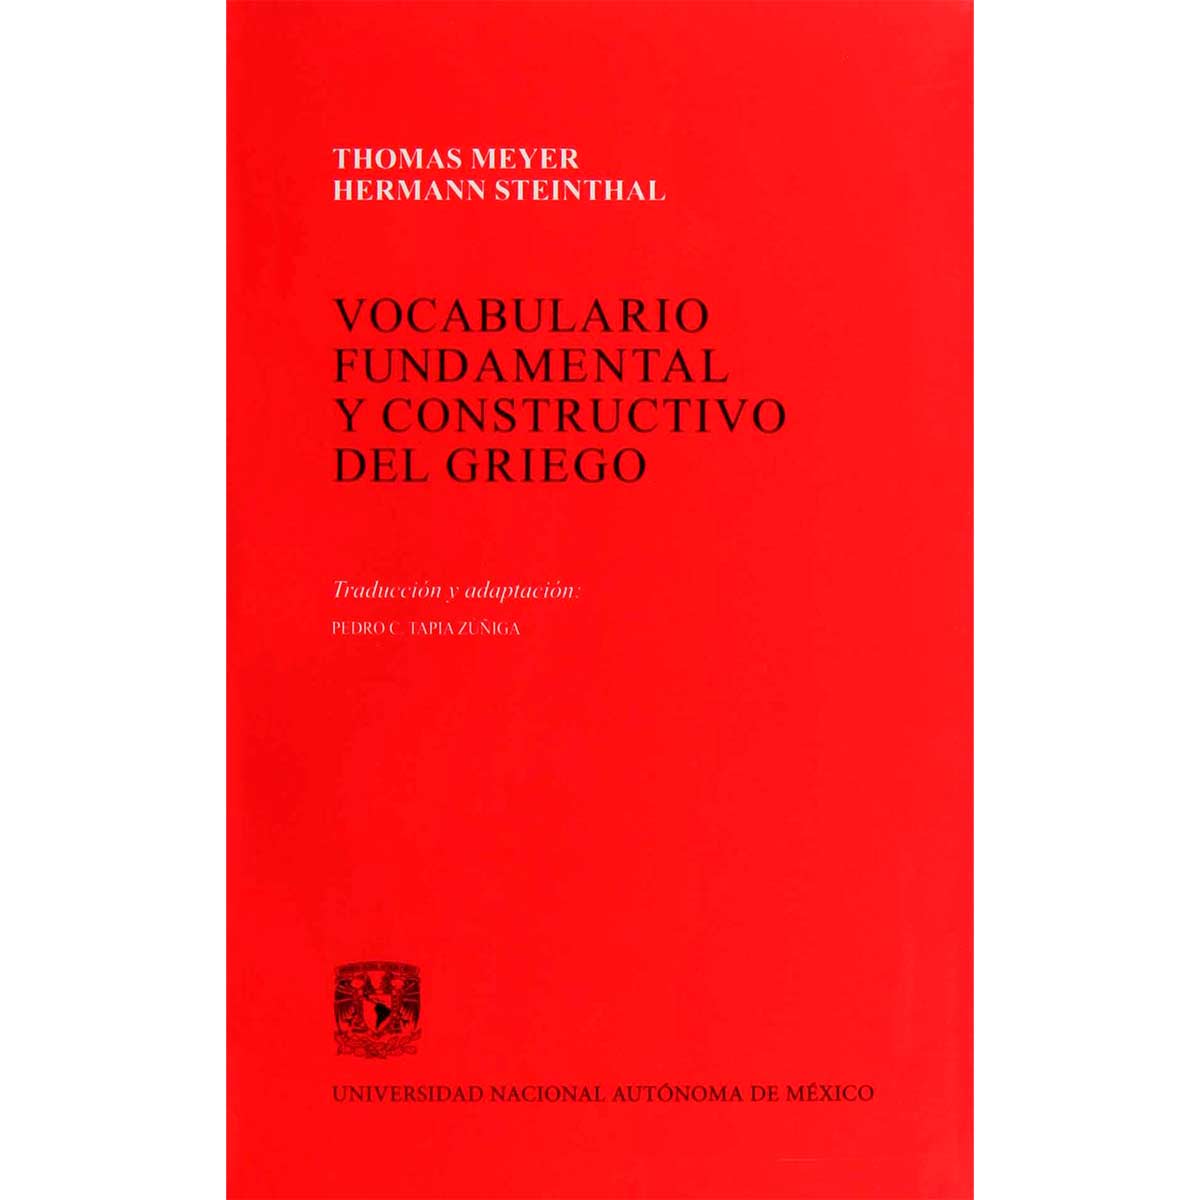 VOCABULARIO FUNDAMENTAL Y CONSTRUCTIVO DEL GRIEGO